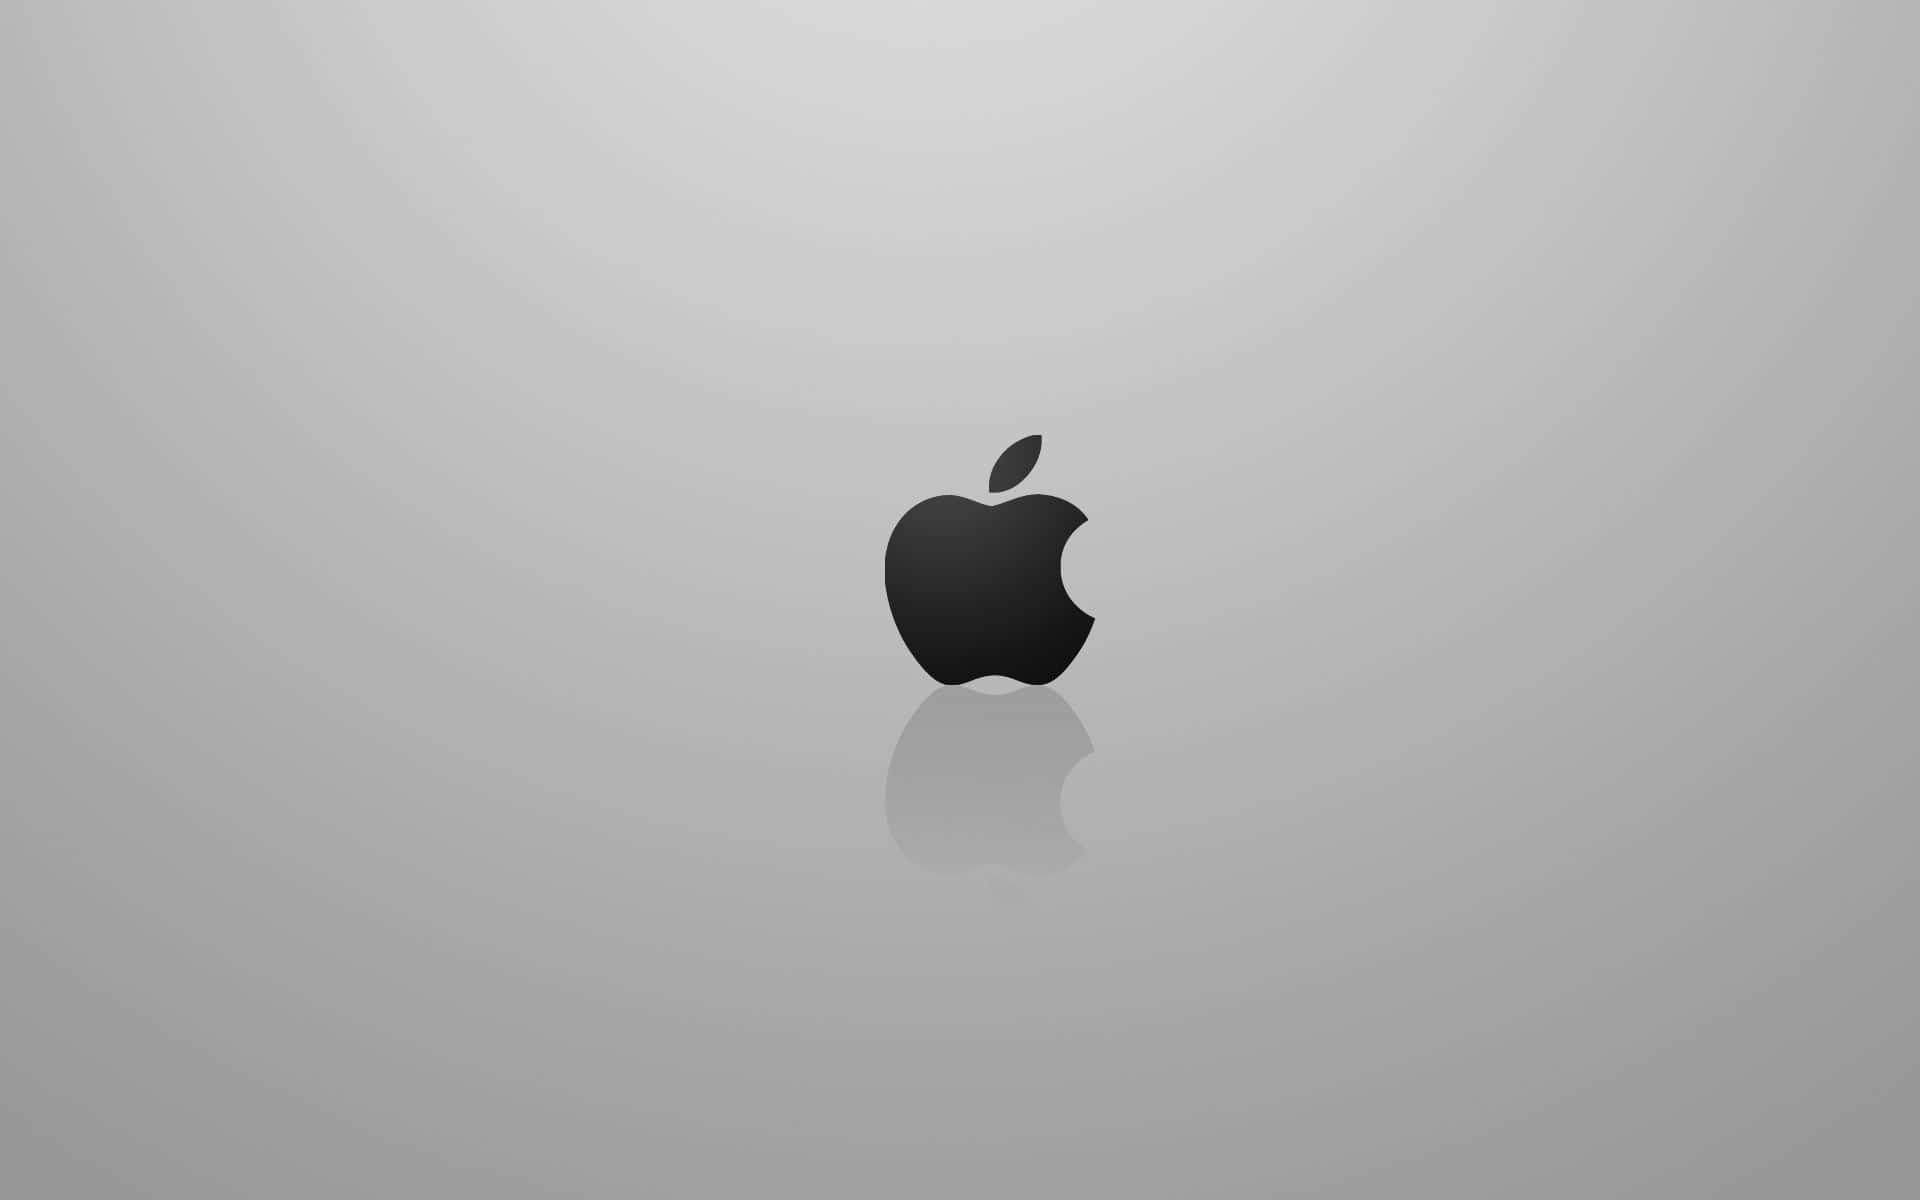 Apple Mac Desktop Reflective Surface Wallpaper